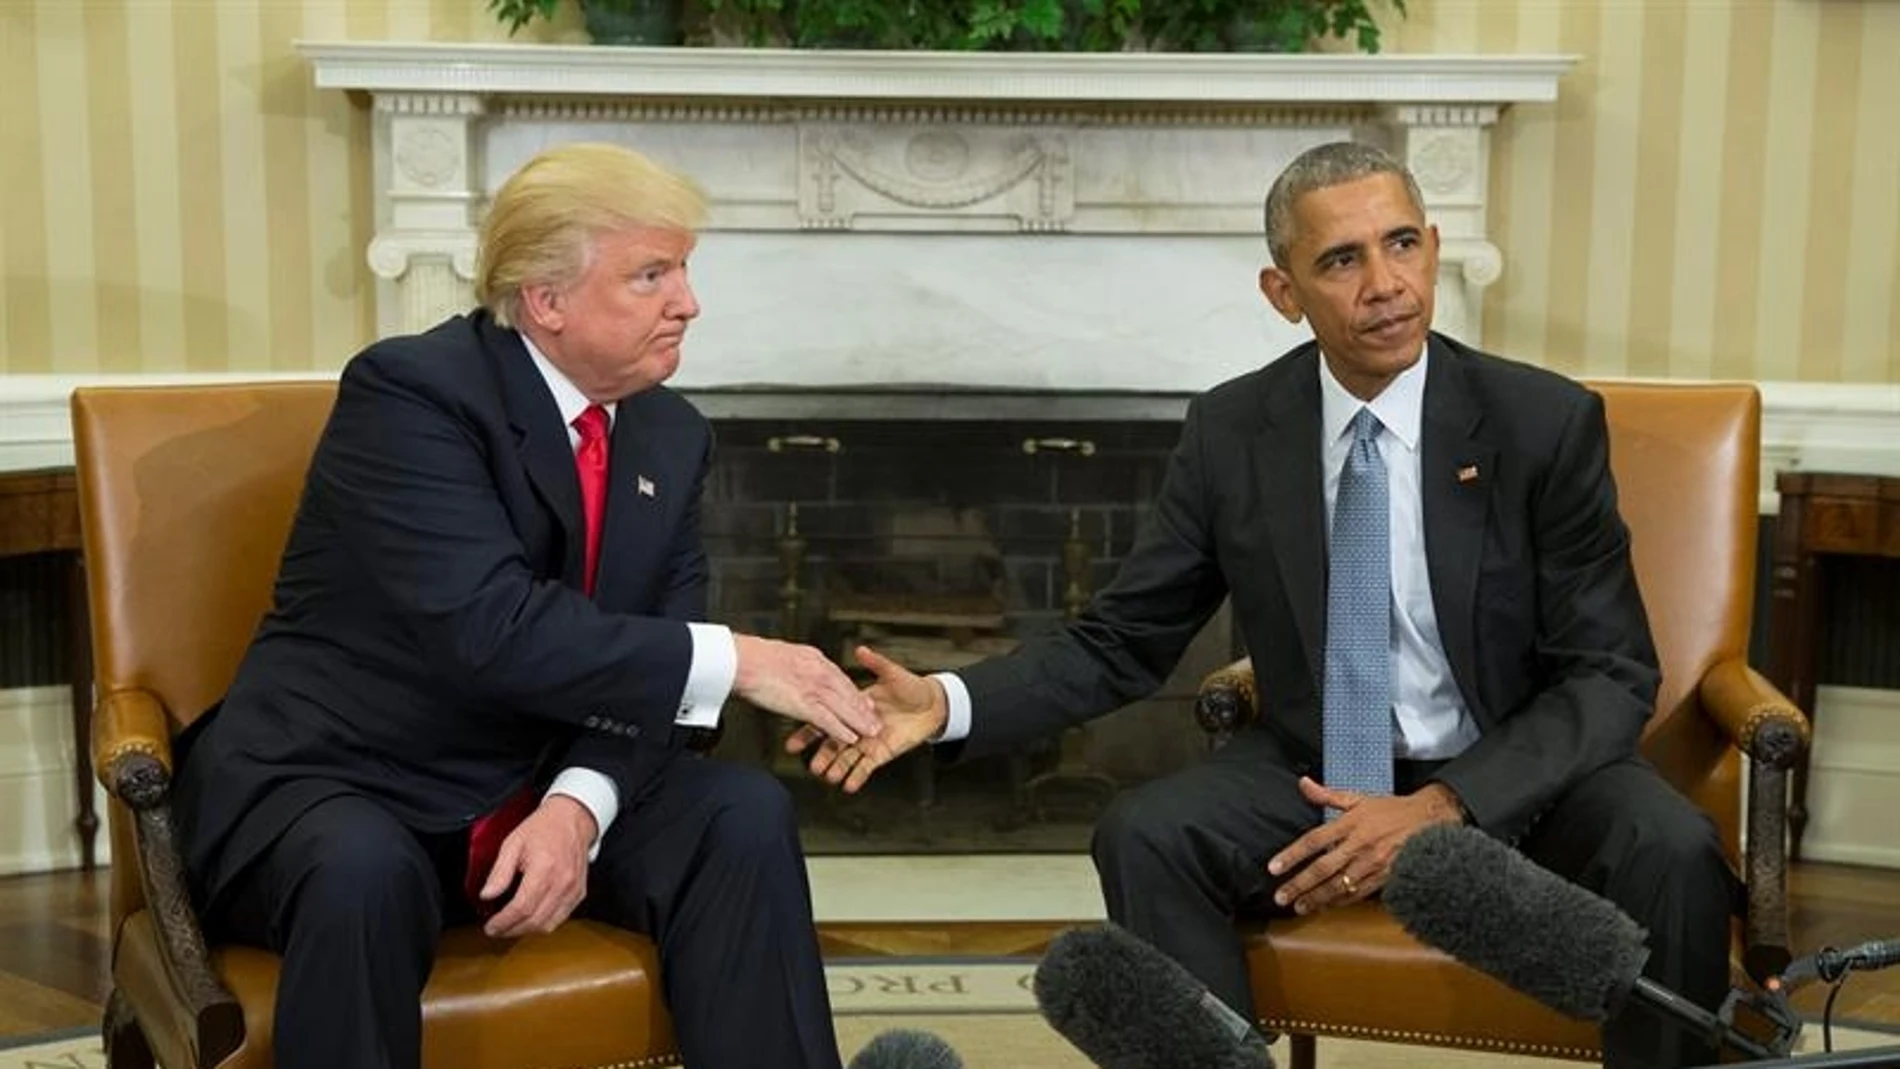 Trump y Obama en la Casa Blanca